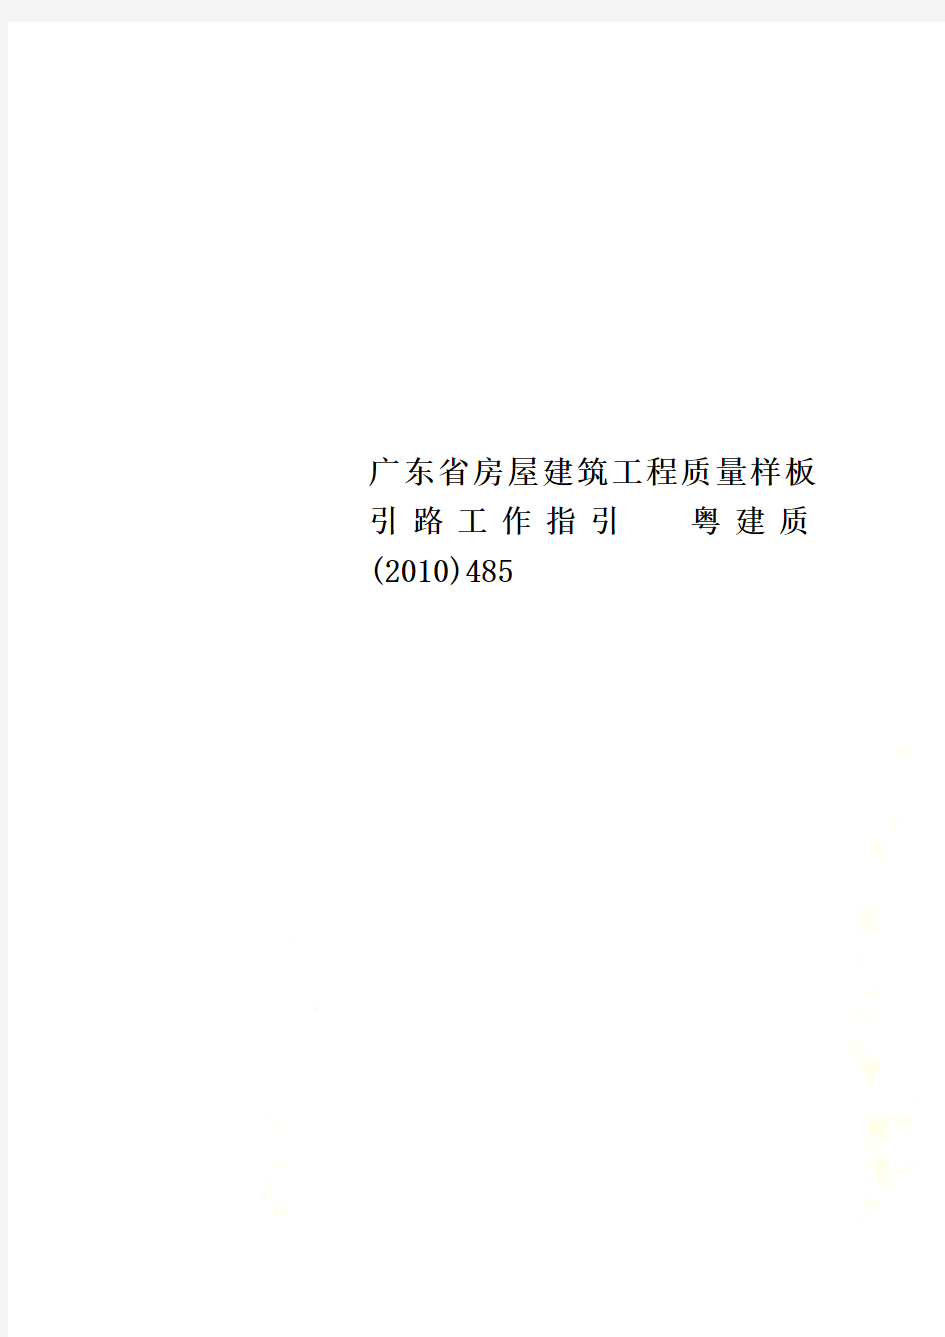 广东省房屋建筑工程质量样板引路工作指引  粤建质(2010)485